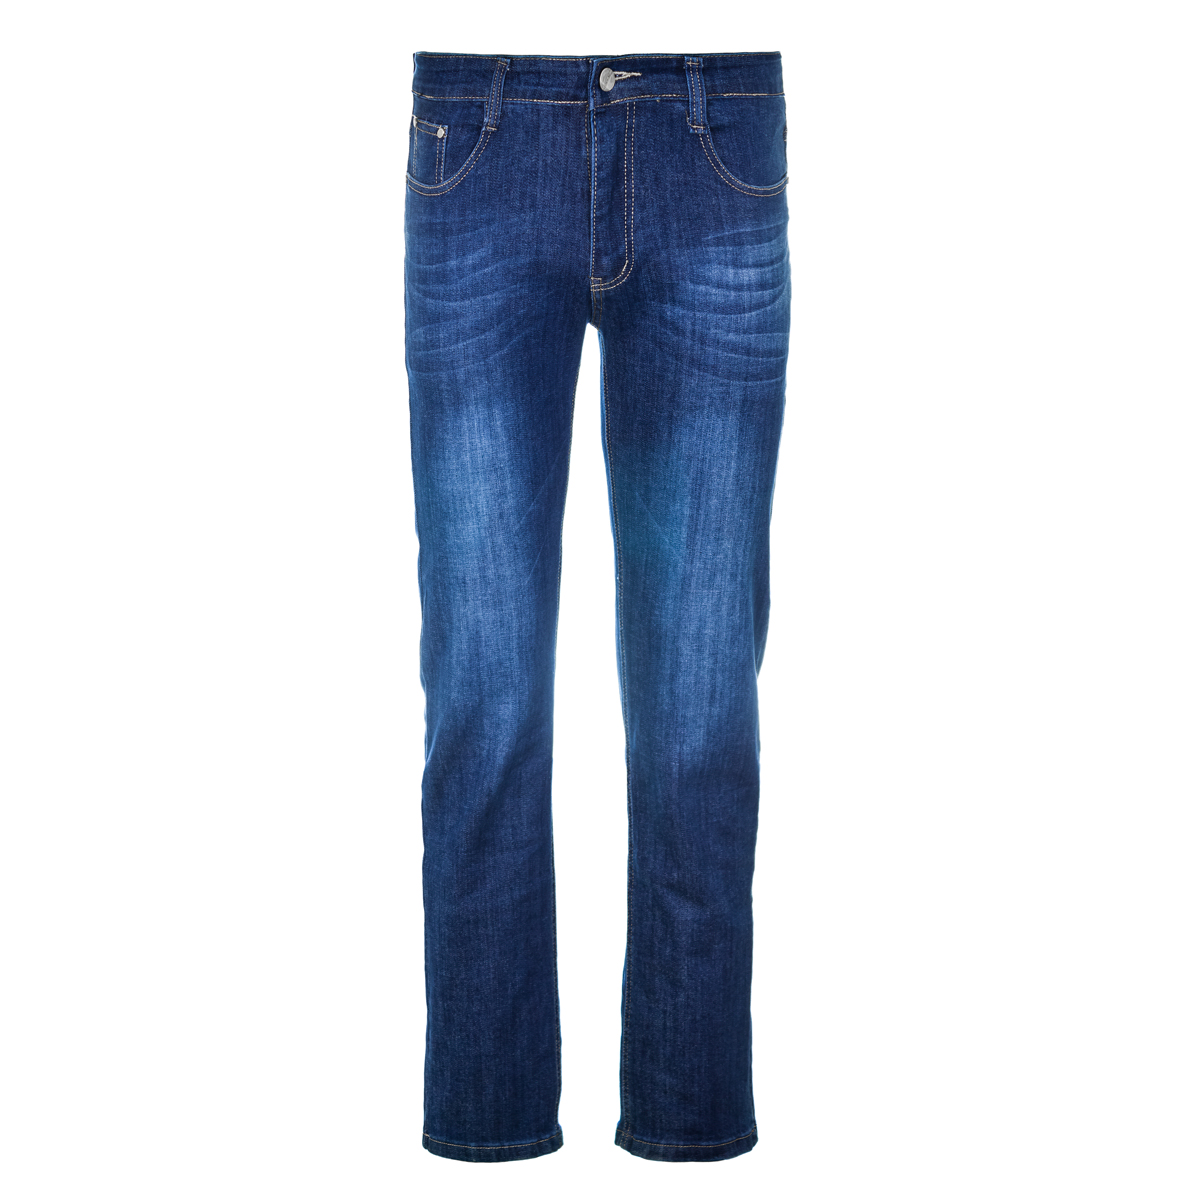 Муж. джинсы арт. 12-0094 Синий р. 31 Китай, размер 31 - фото 1